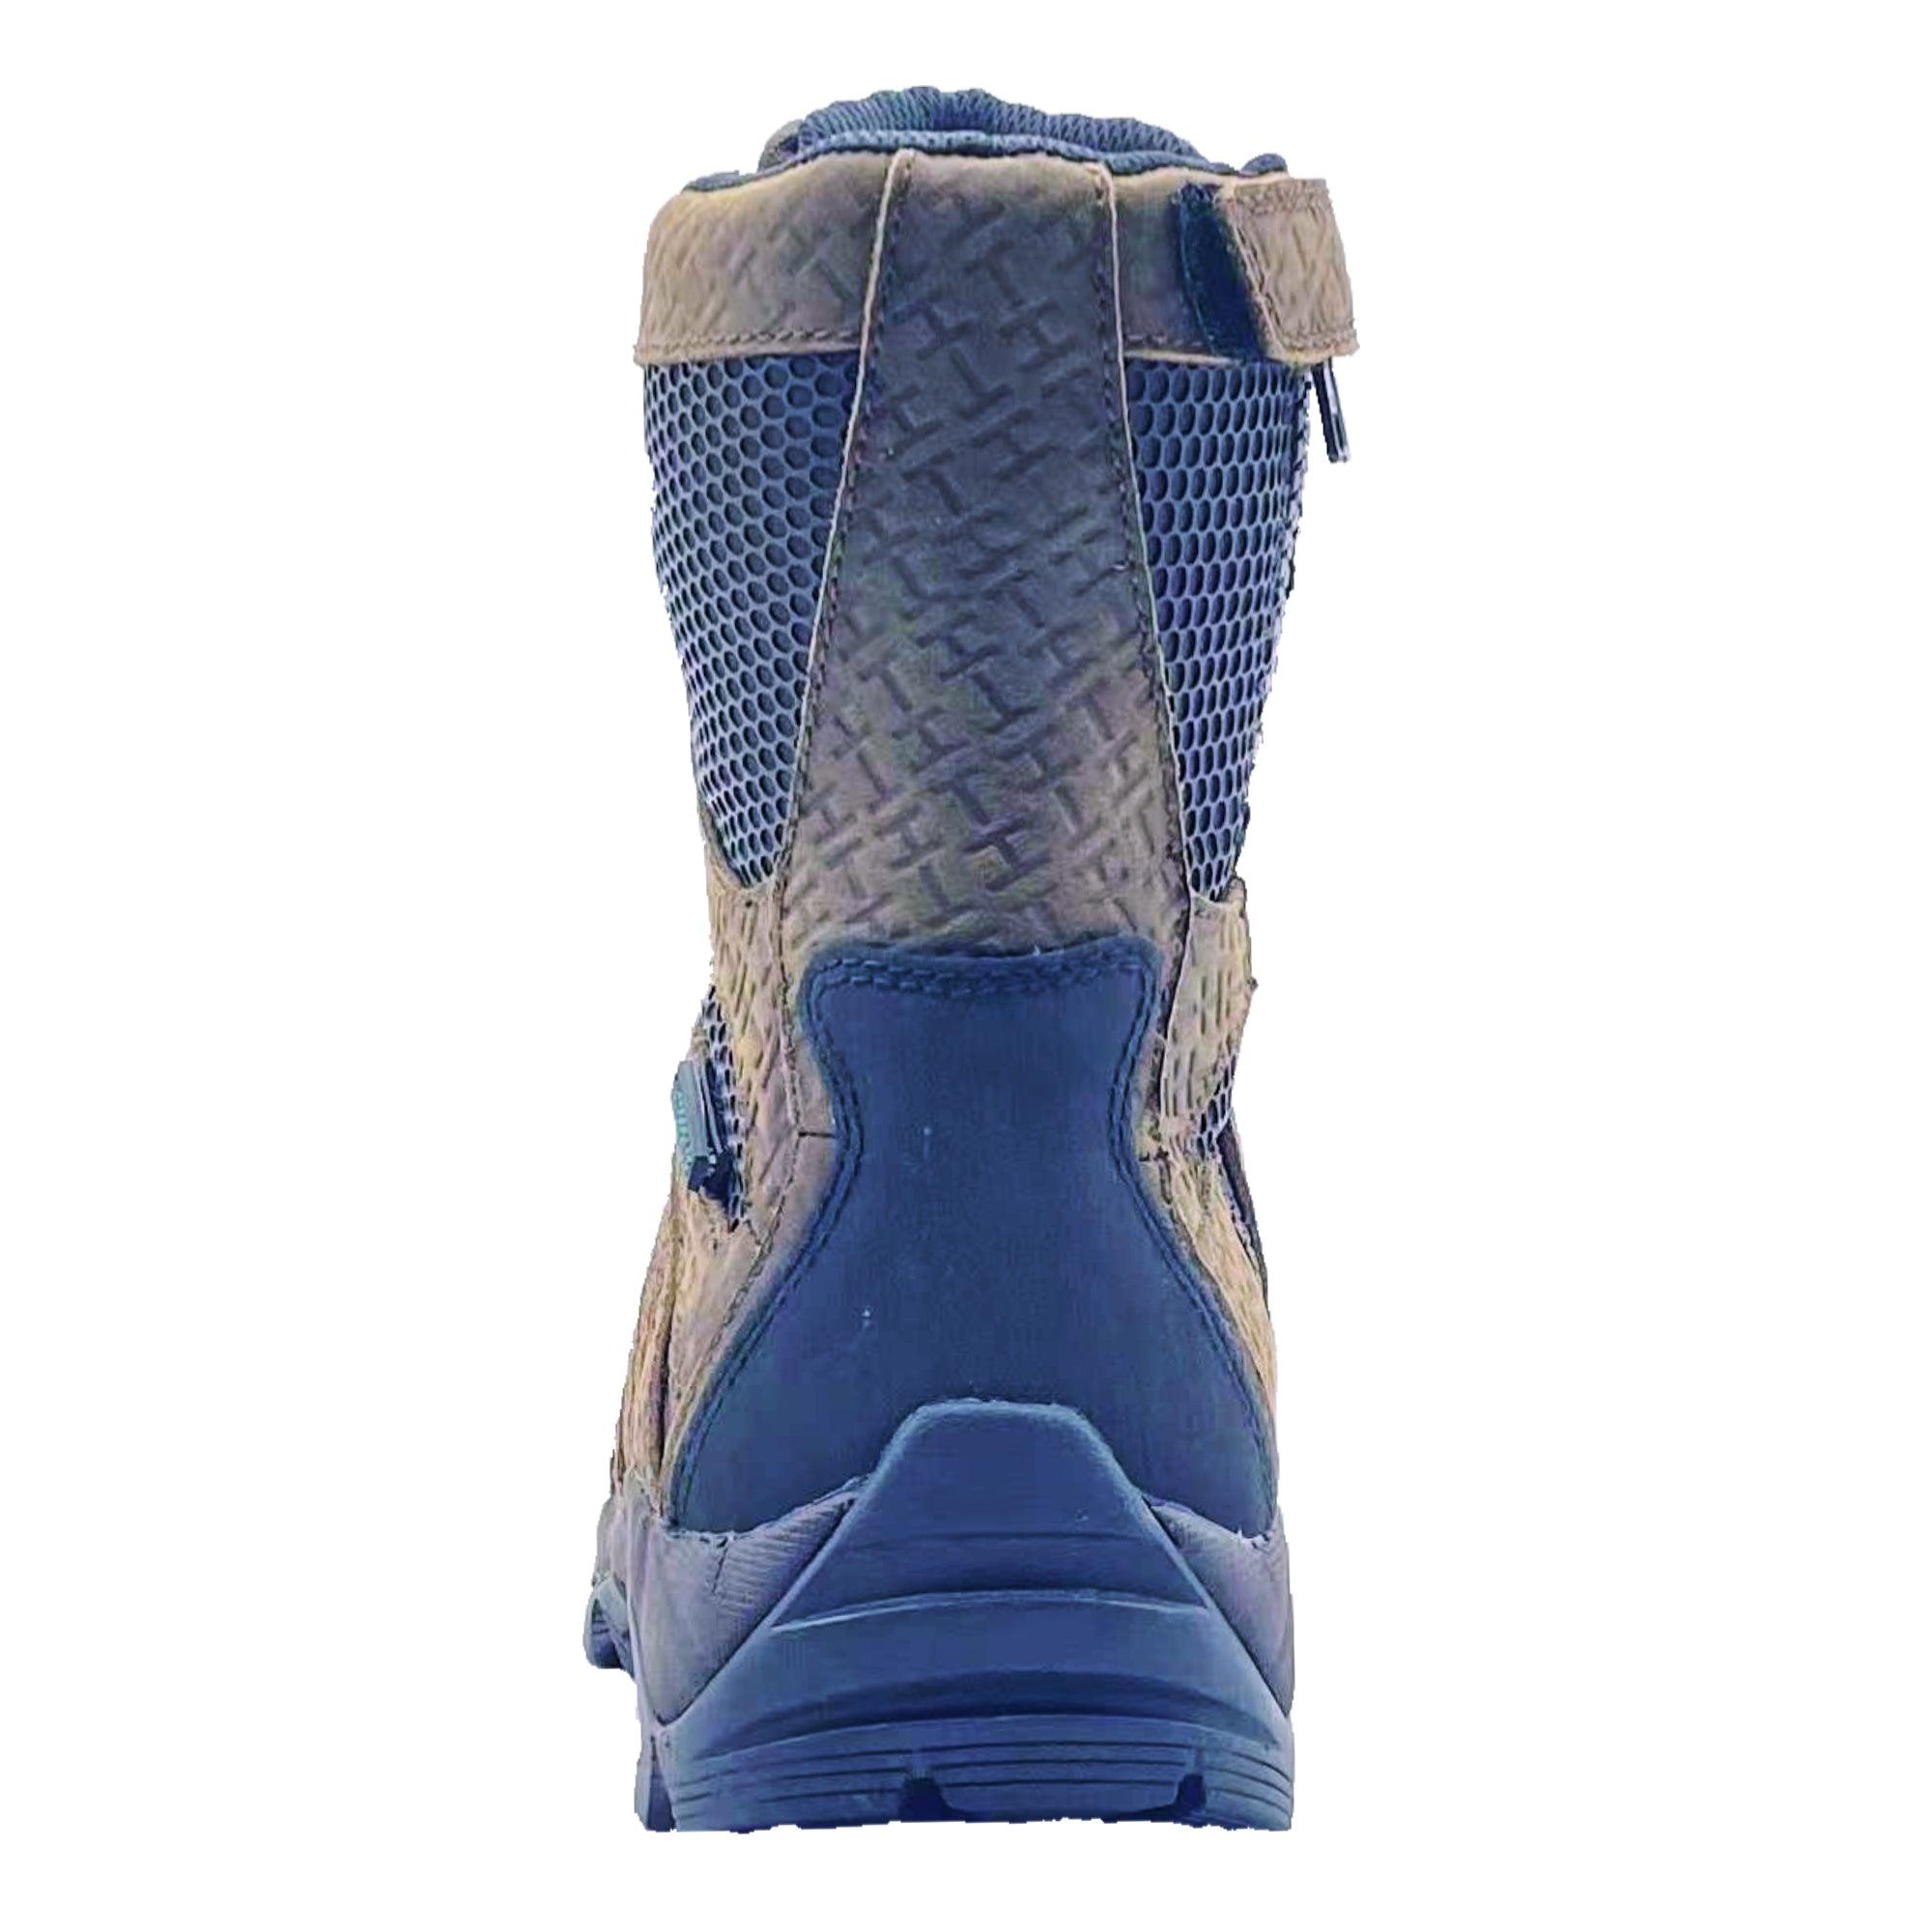 AdTec Men's 8" Waterproof Side Zipper Hunting Boot Brown - Flyclothing LLC